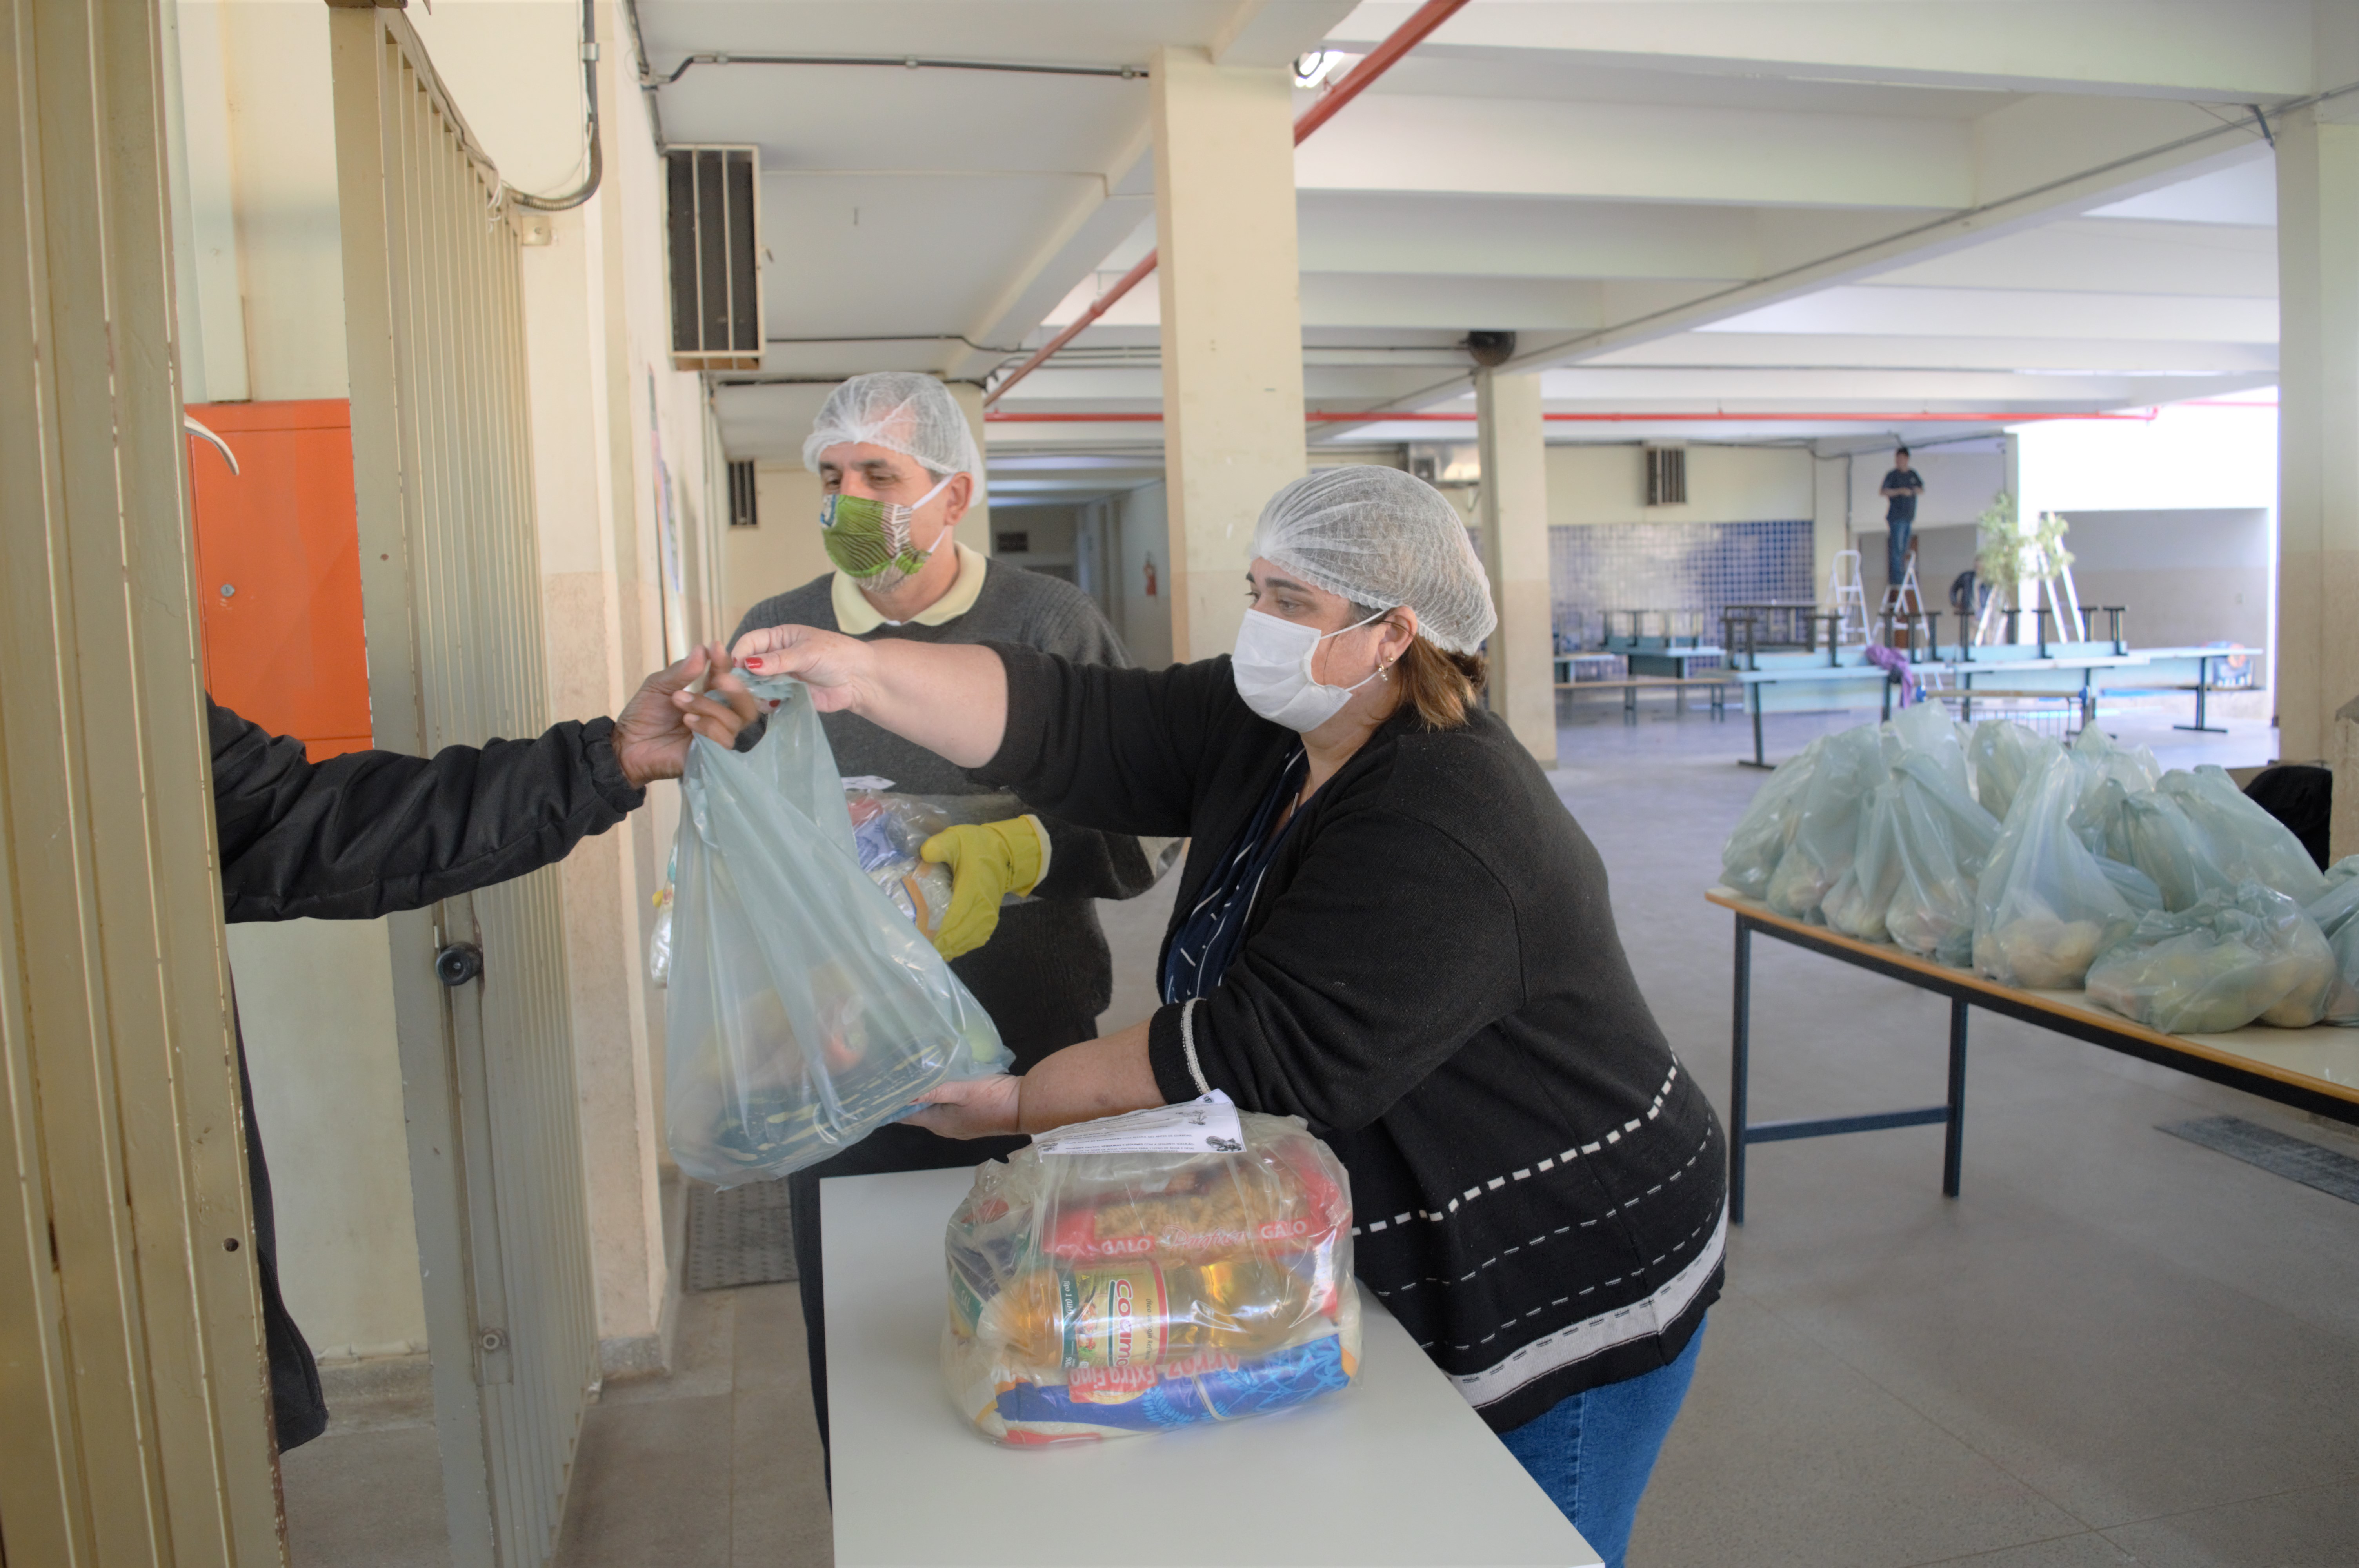 Entrega dos kits de alimentação na escola Prof. Athayr Da Silva Rosa - Foto: Carina Costa